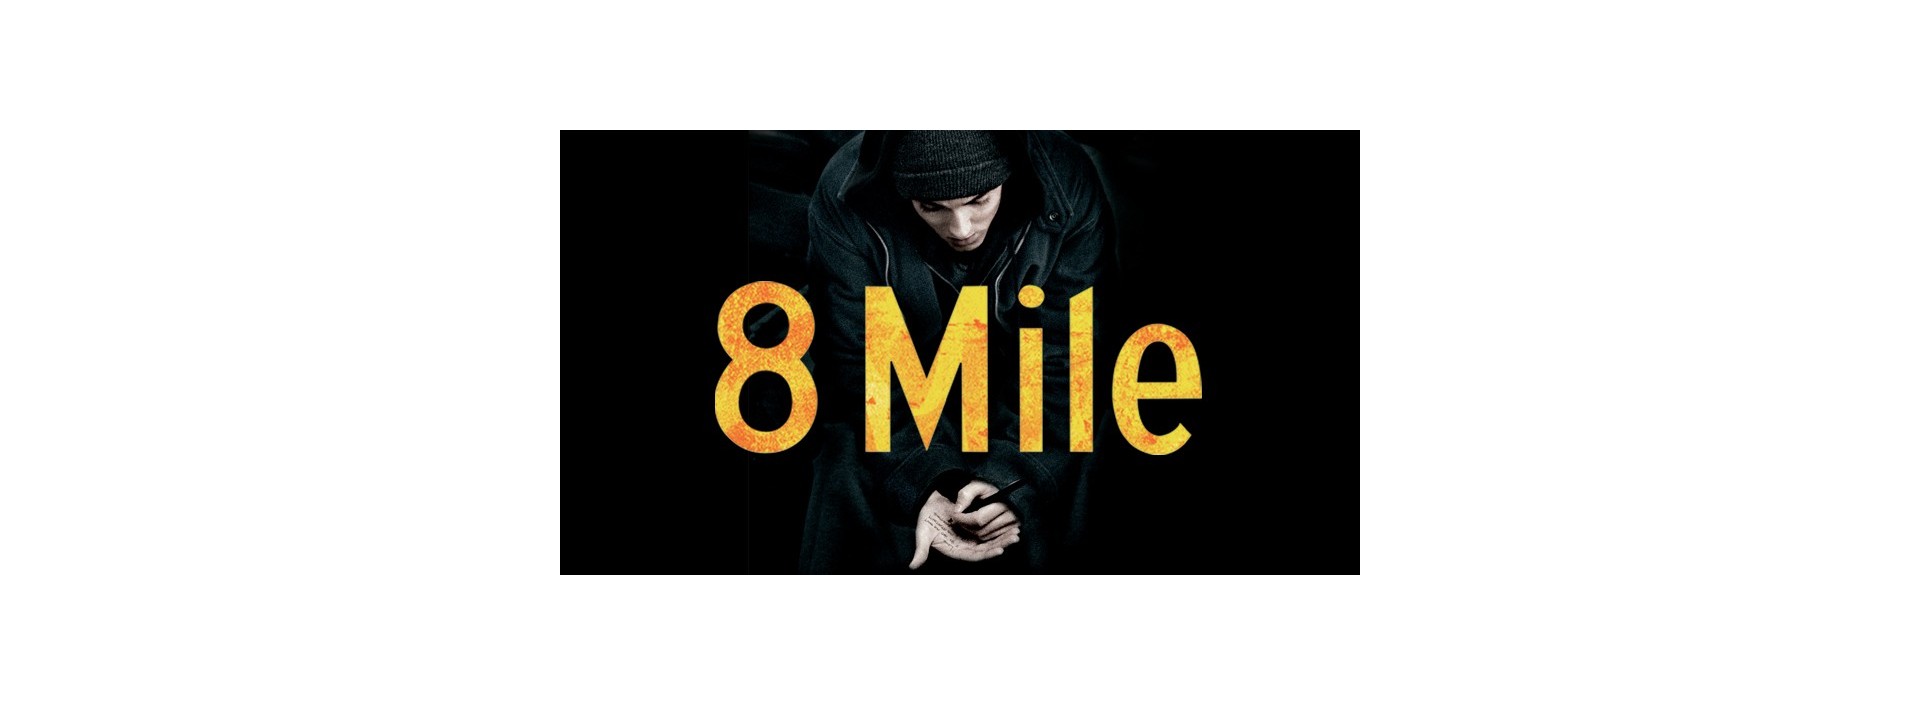 8 MILE